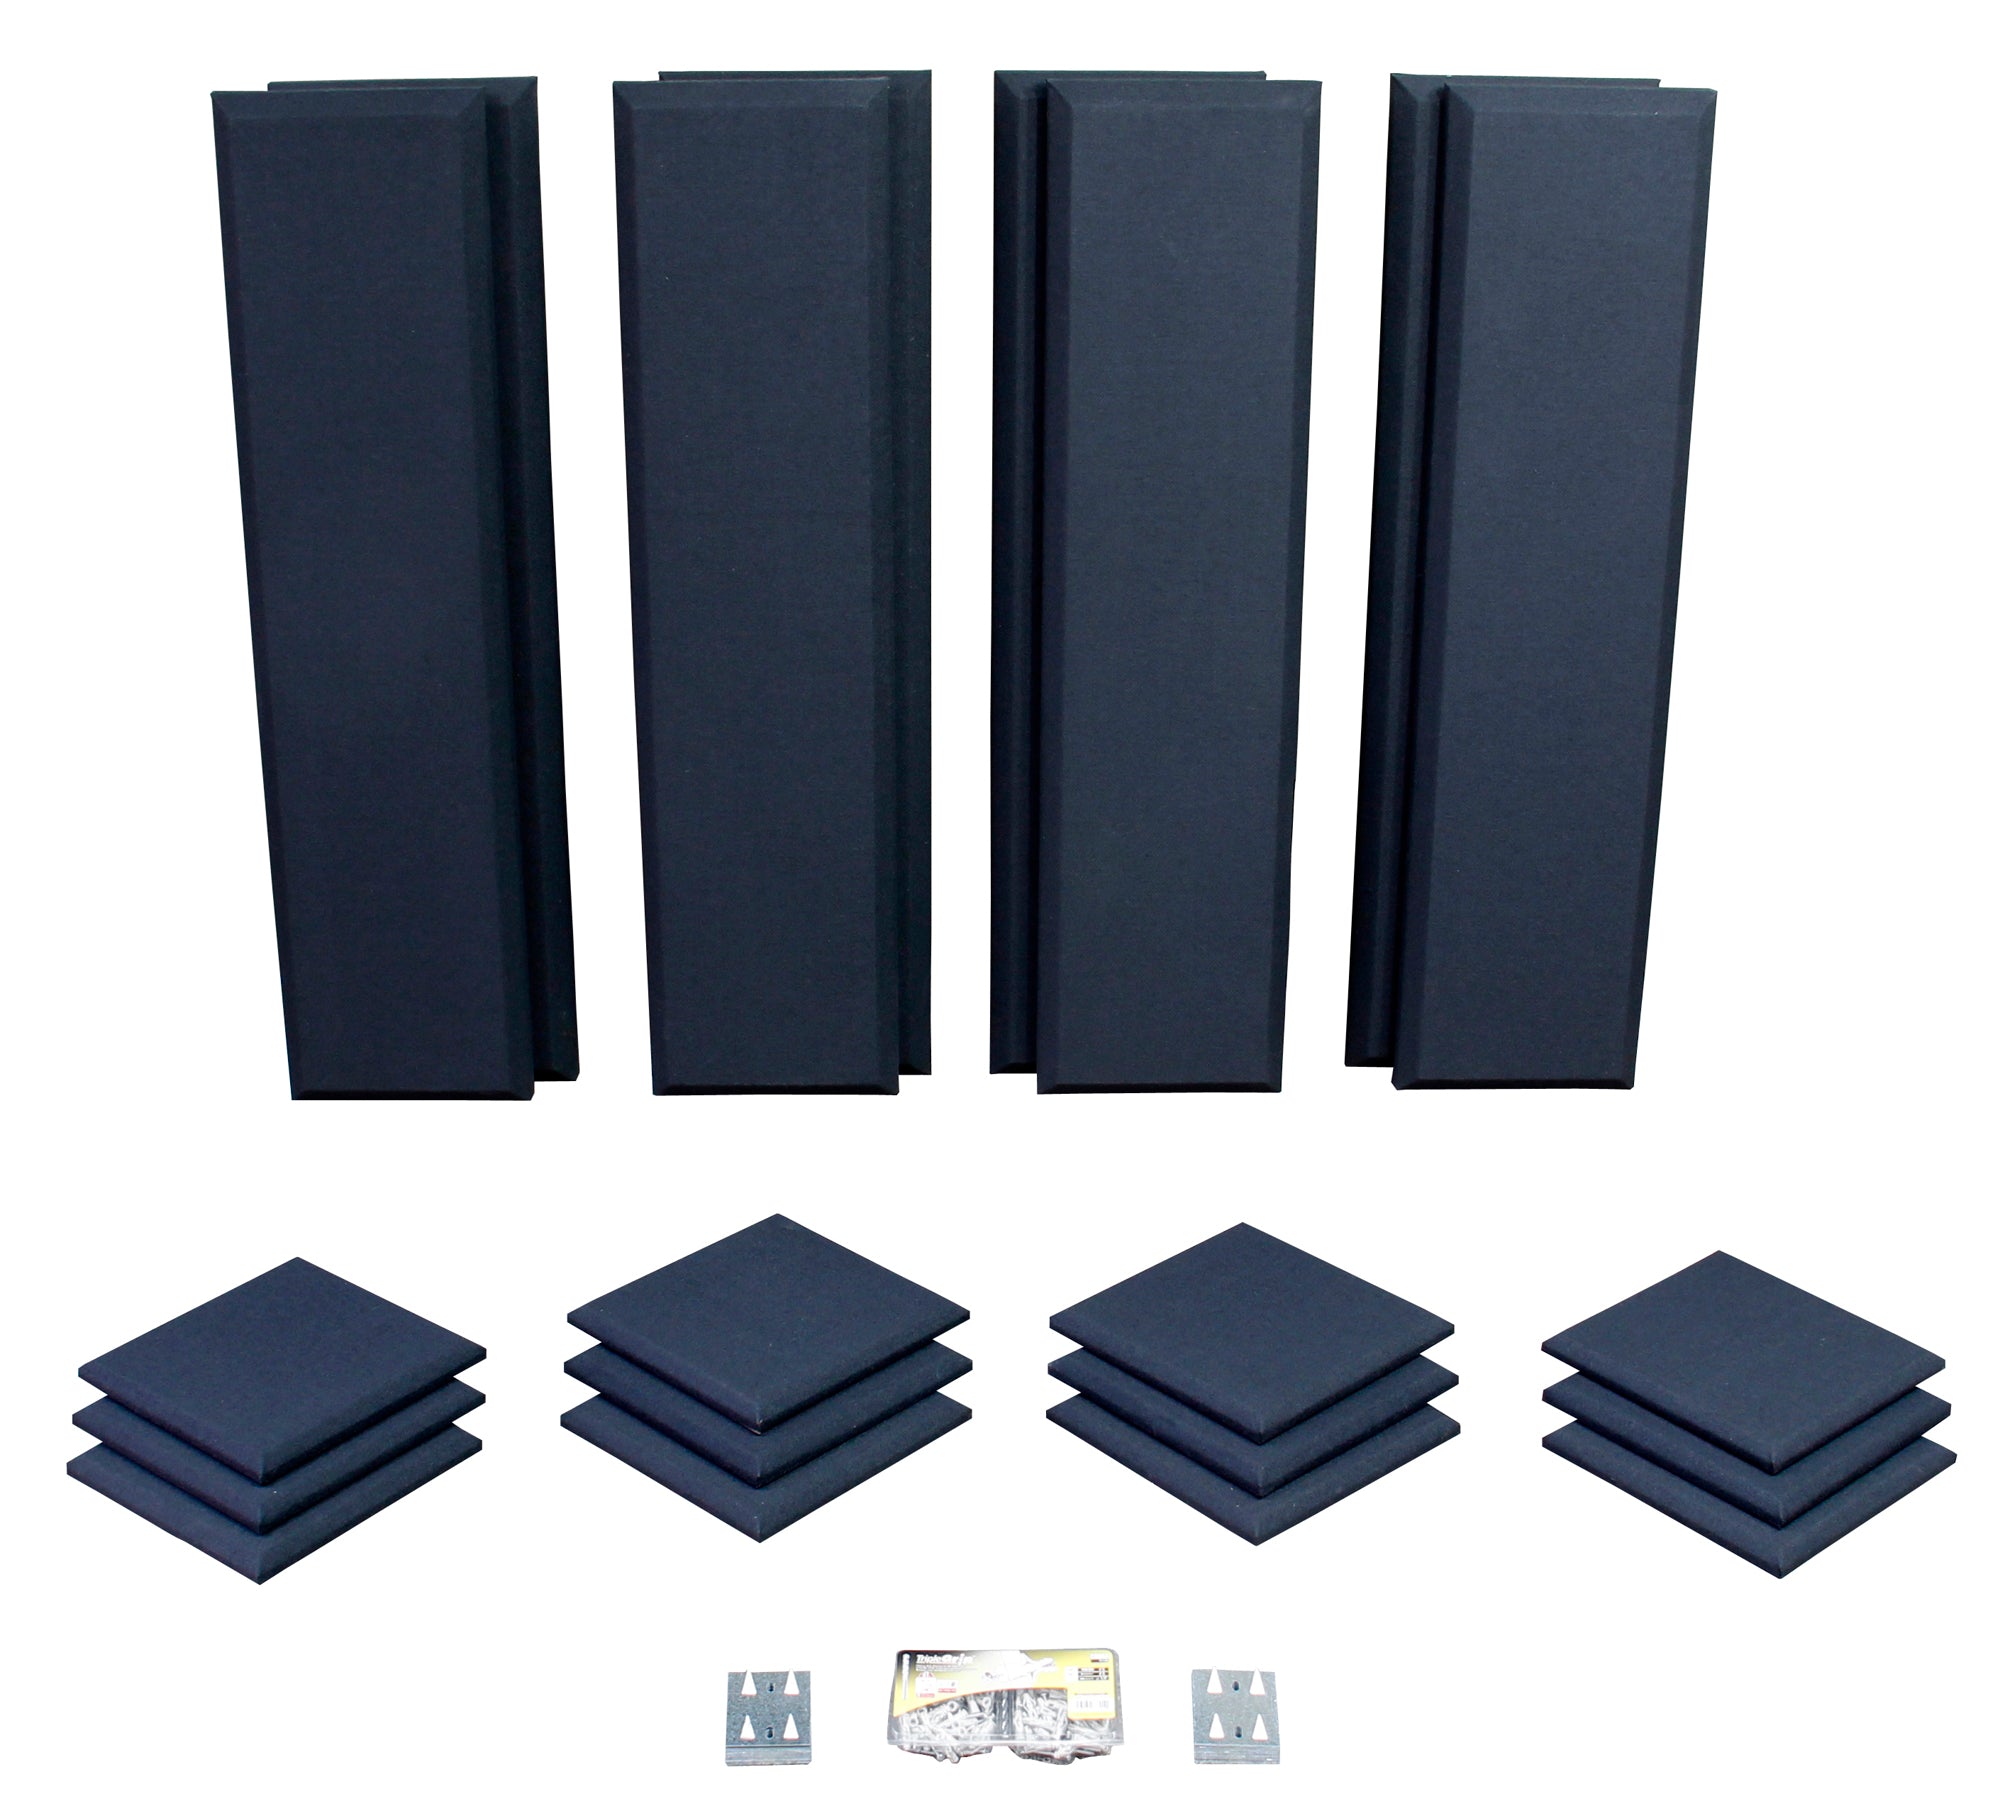 Primacoustic London 10 -Room Kit - Acoustics - Professional Audio Design, Inc